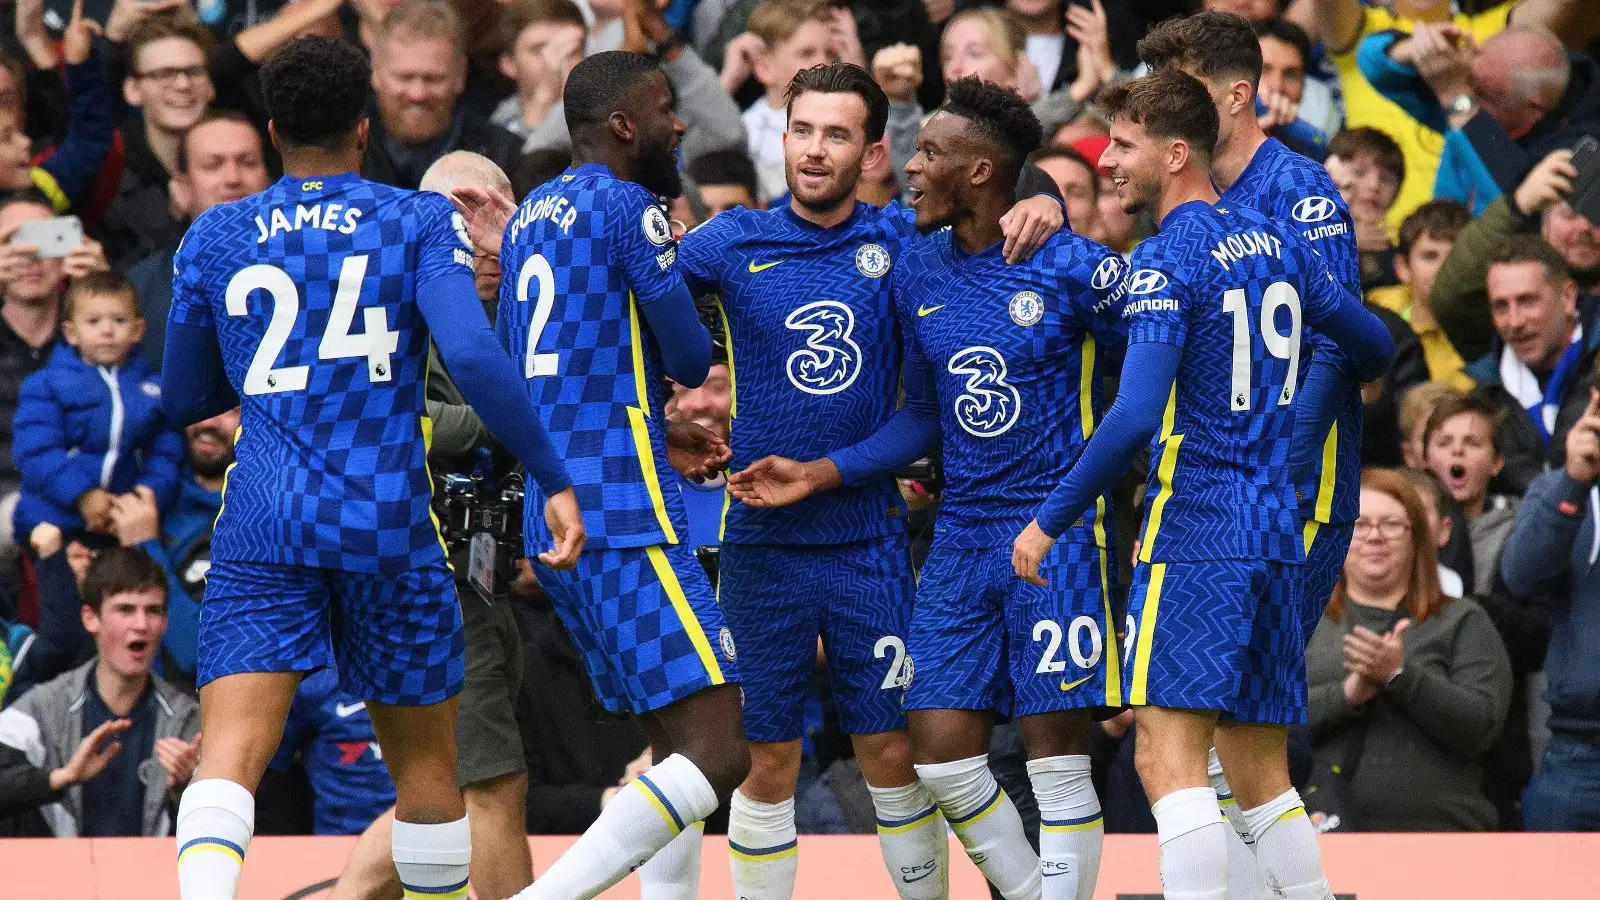 Callum Hudson-Odoi celebrates a goal with his Chelsea teammates.